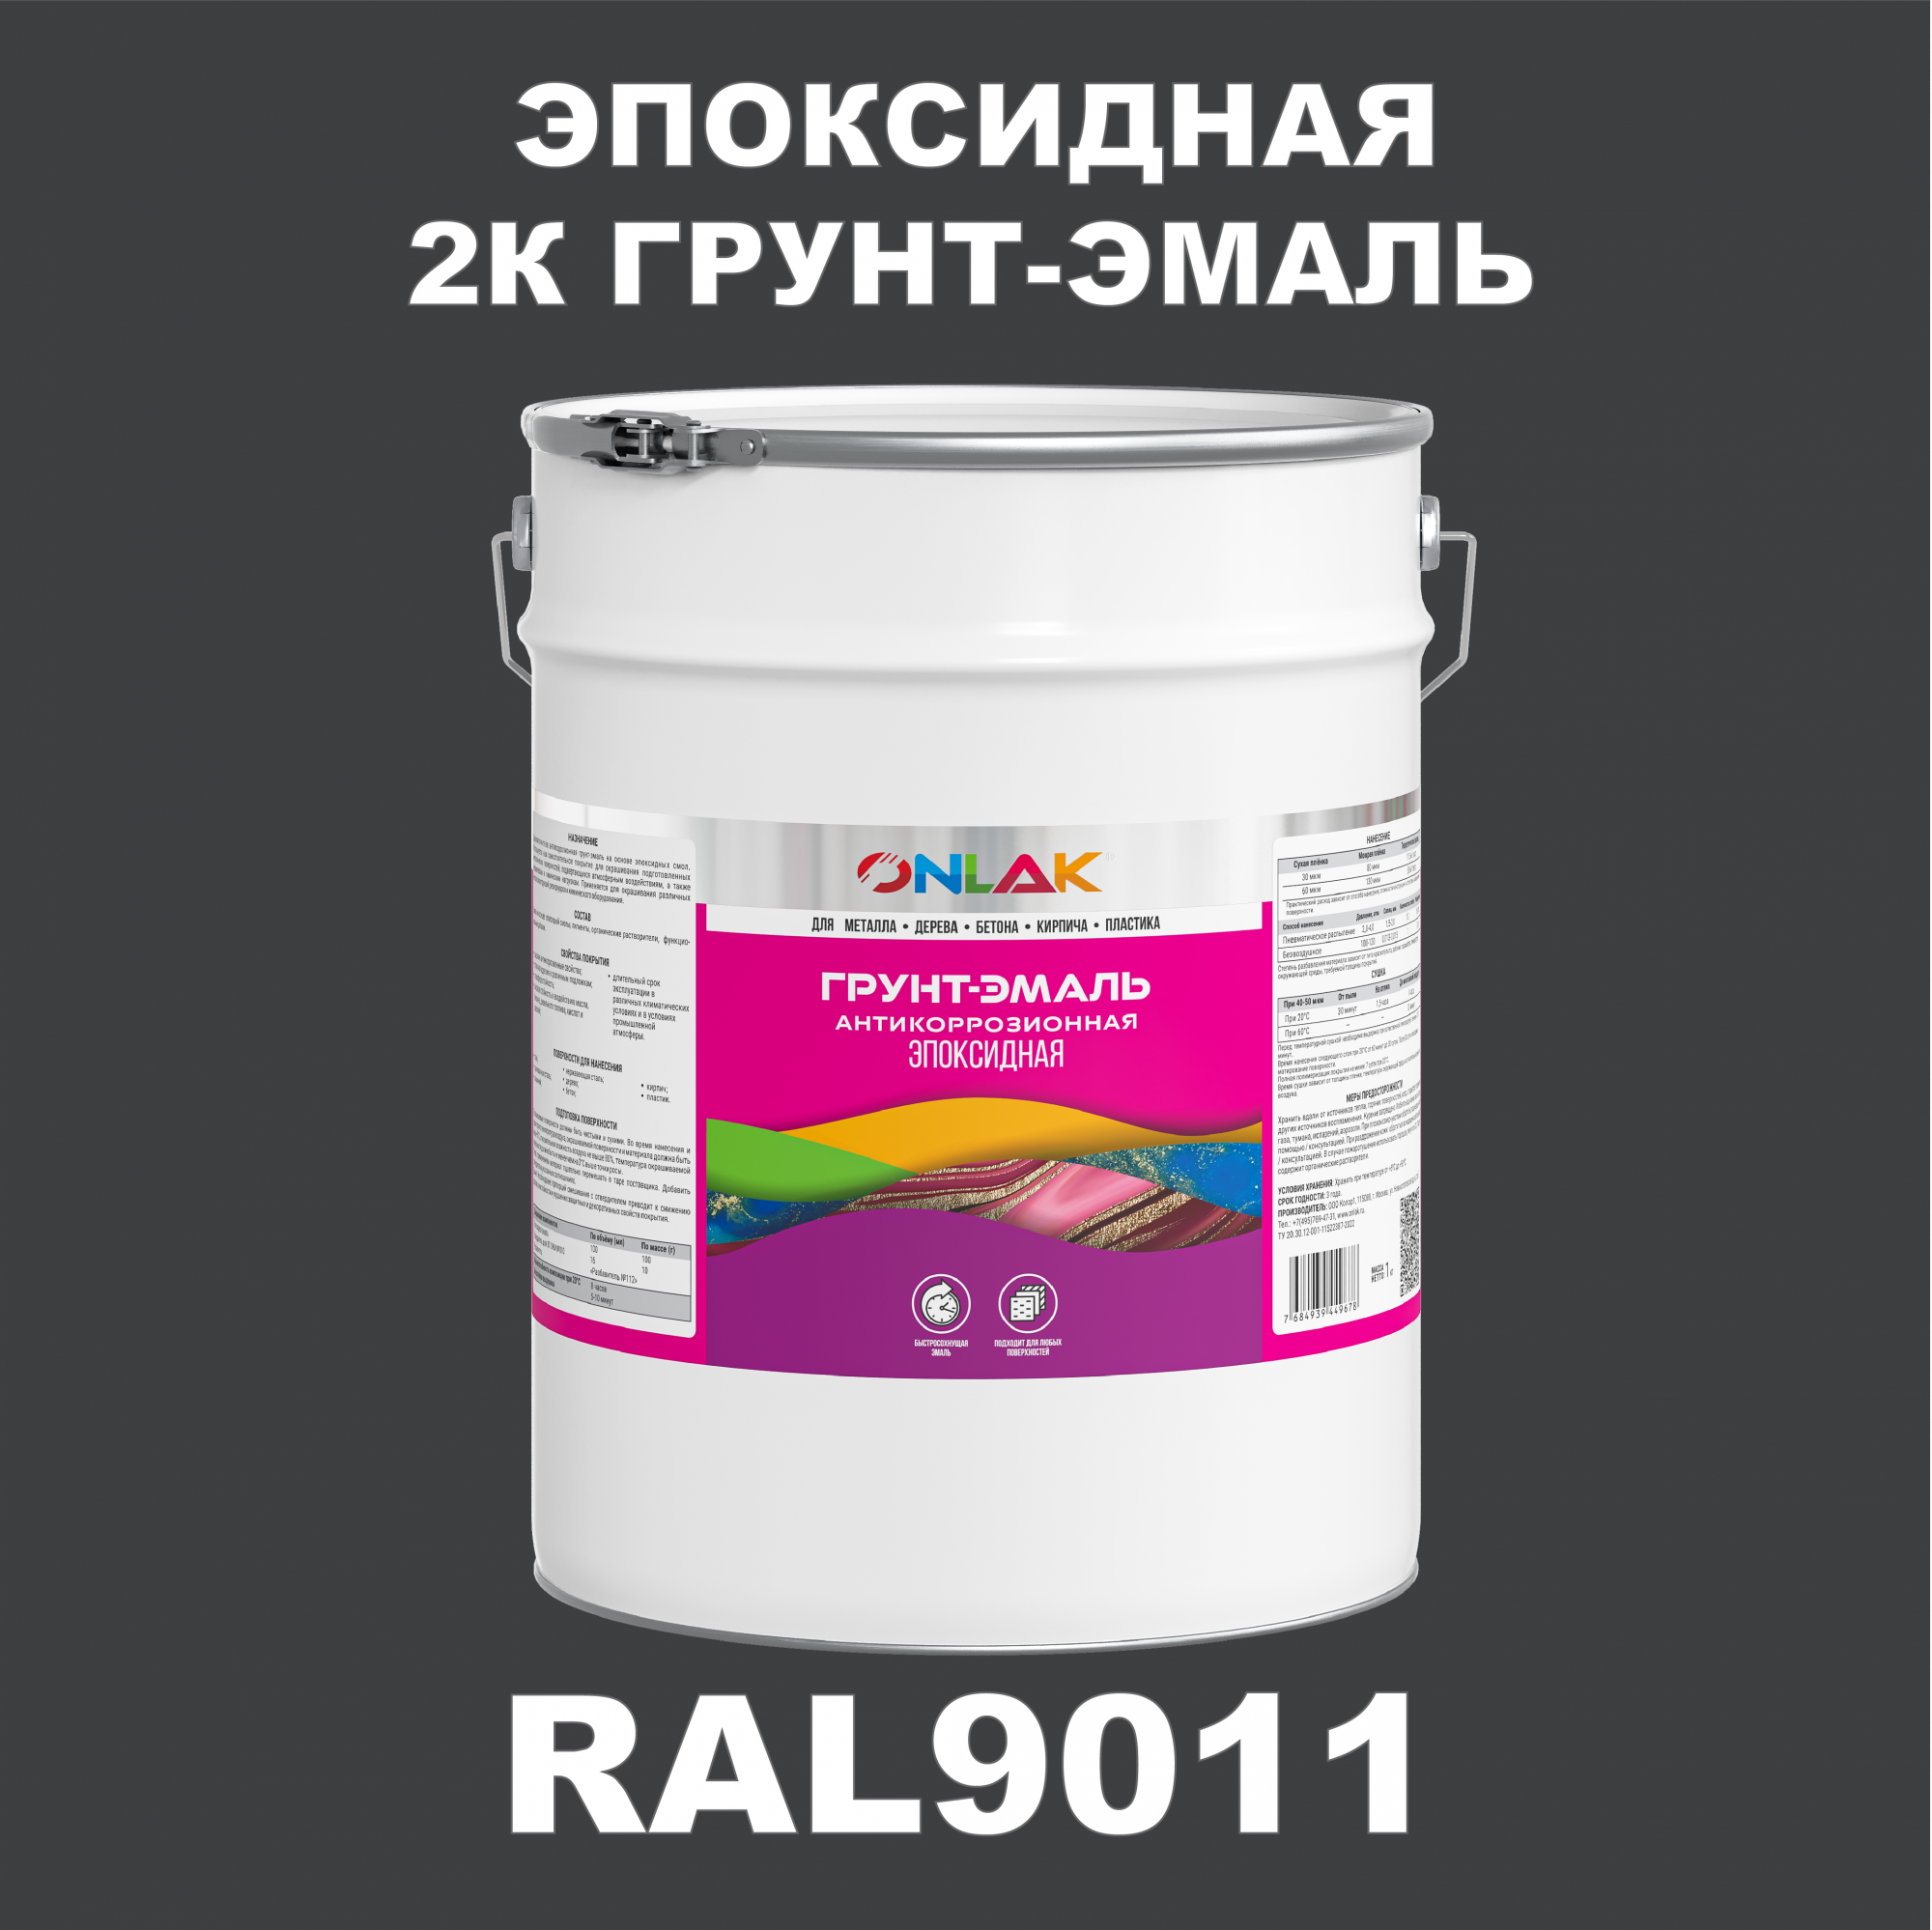 Грунт-эмаль ONLAK Эпоксидная 2К RAL9011 по металлу, ржавчине, дереву, бетону